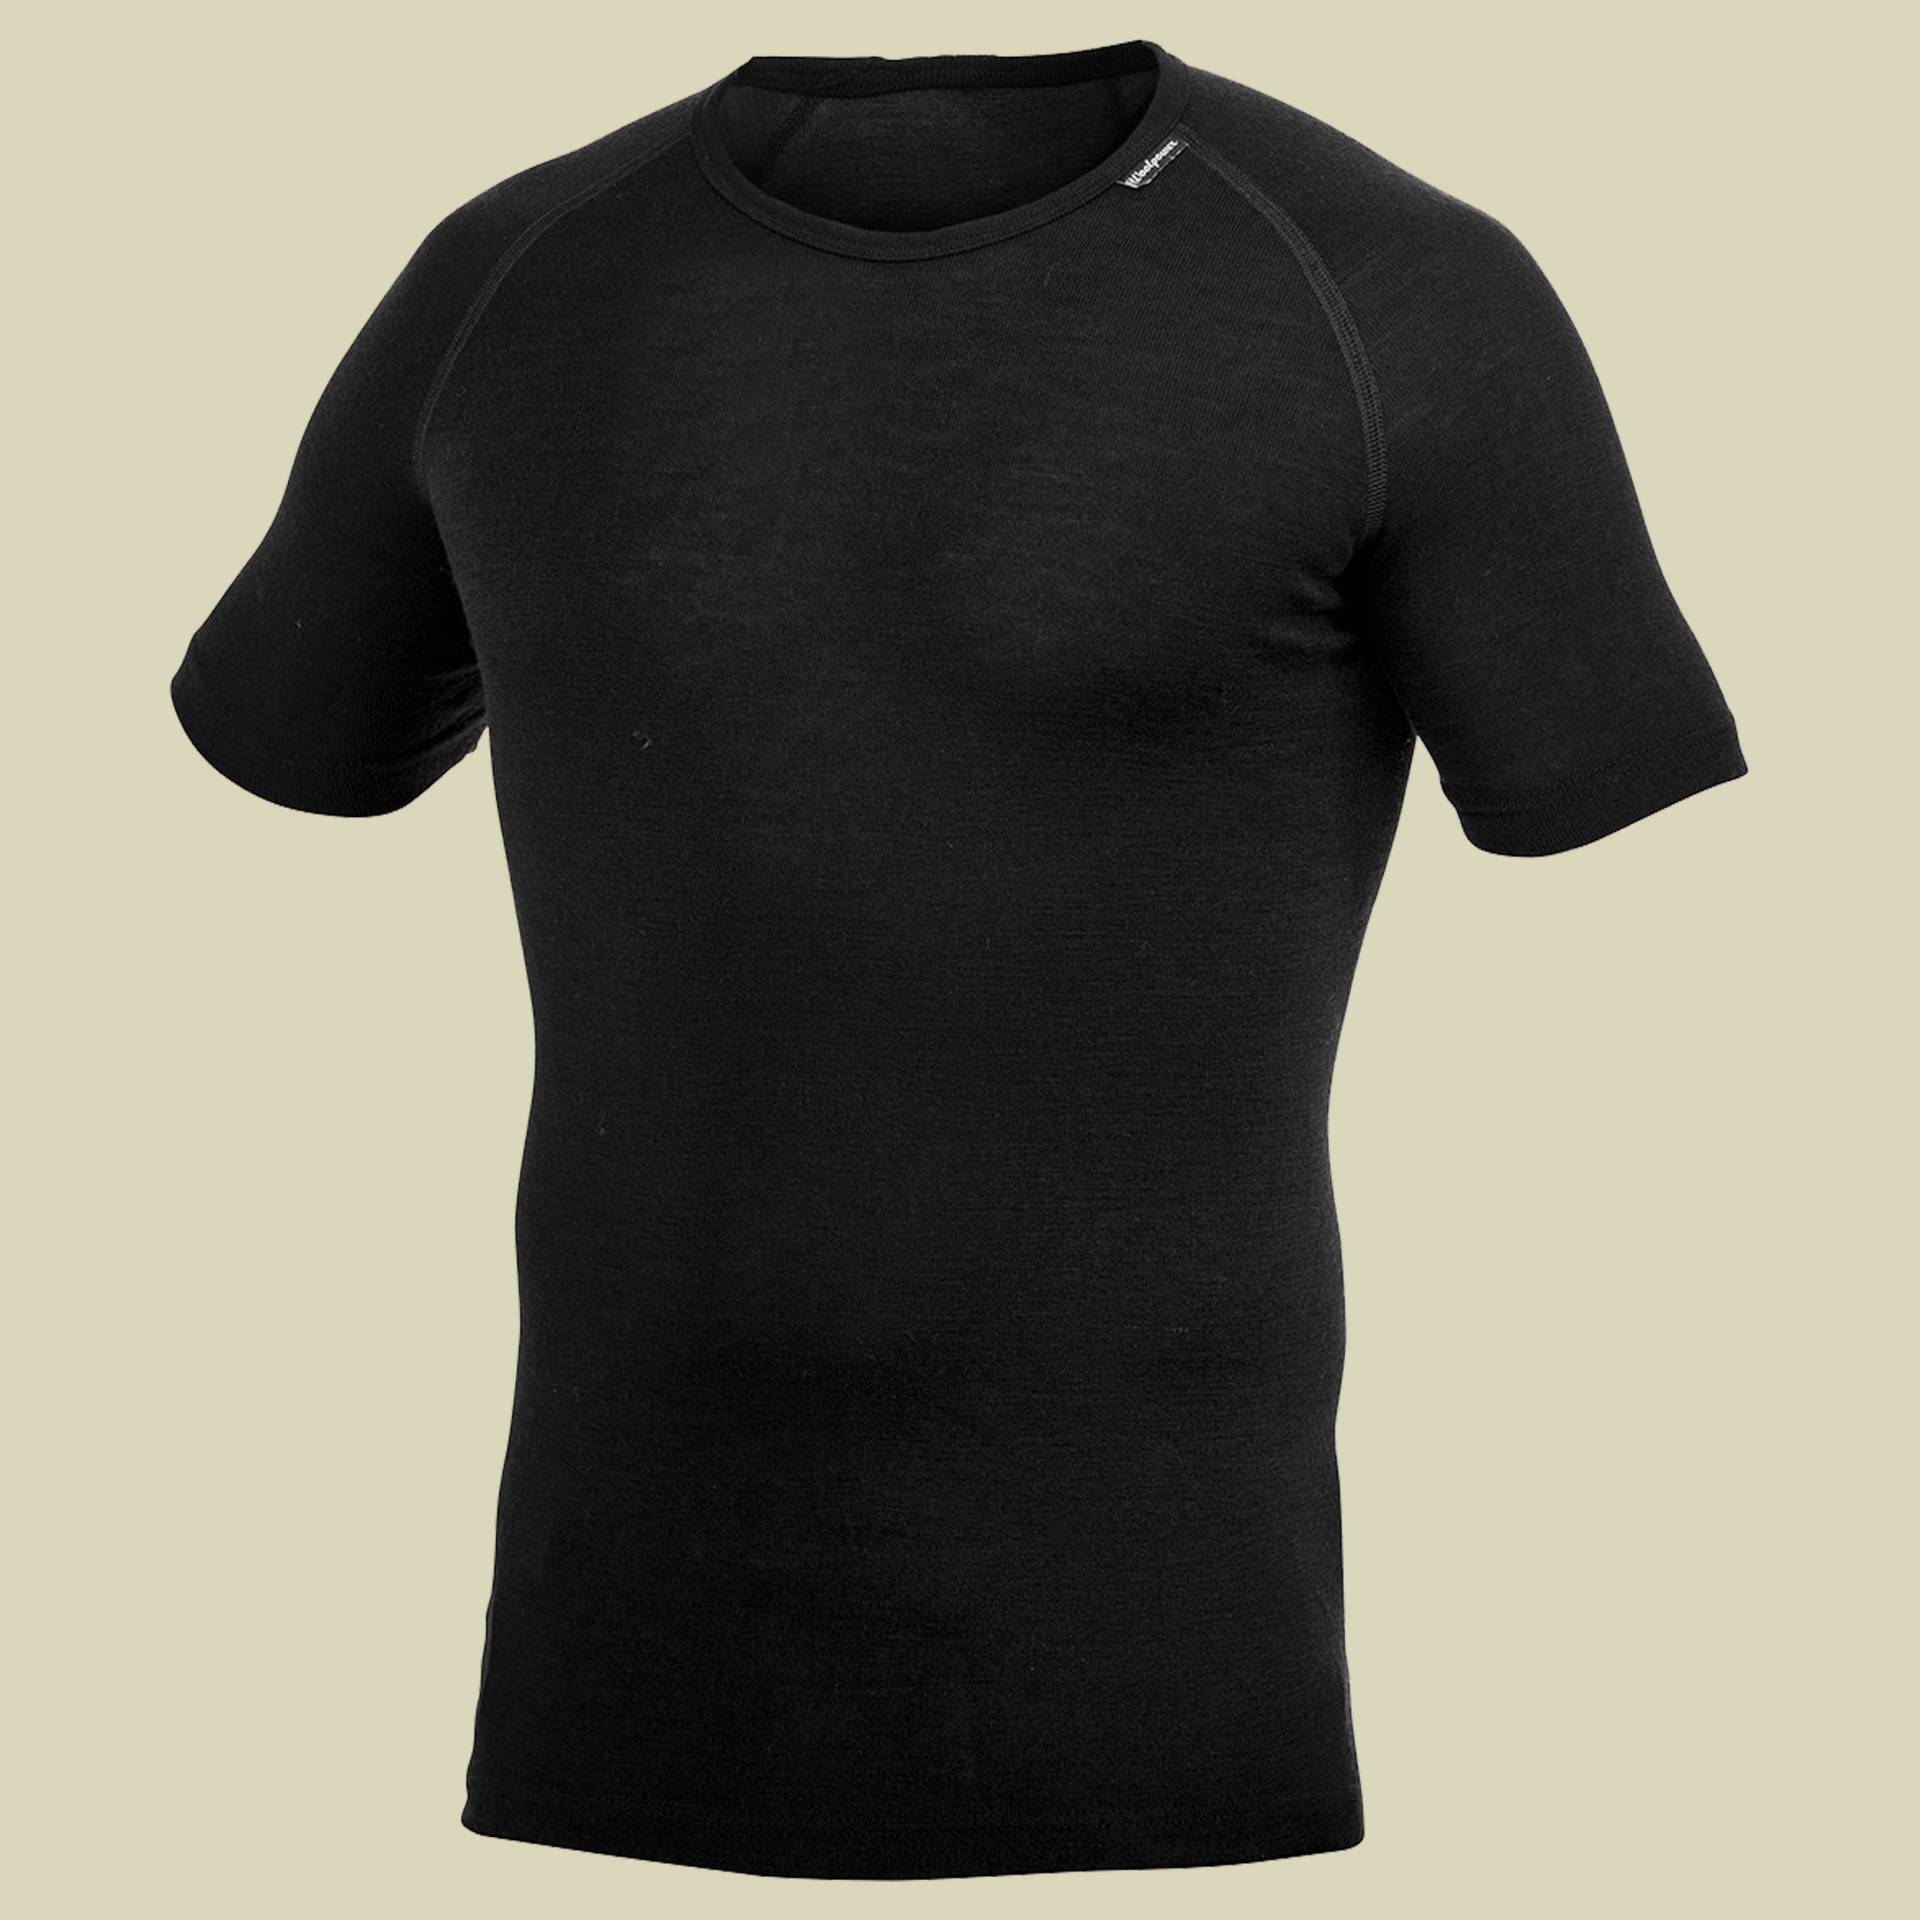 Lite T-Shirt L schwarz - Farbe black von Woolpower